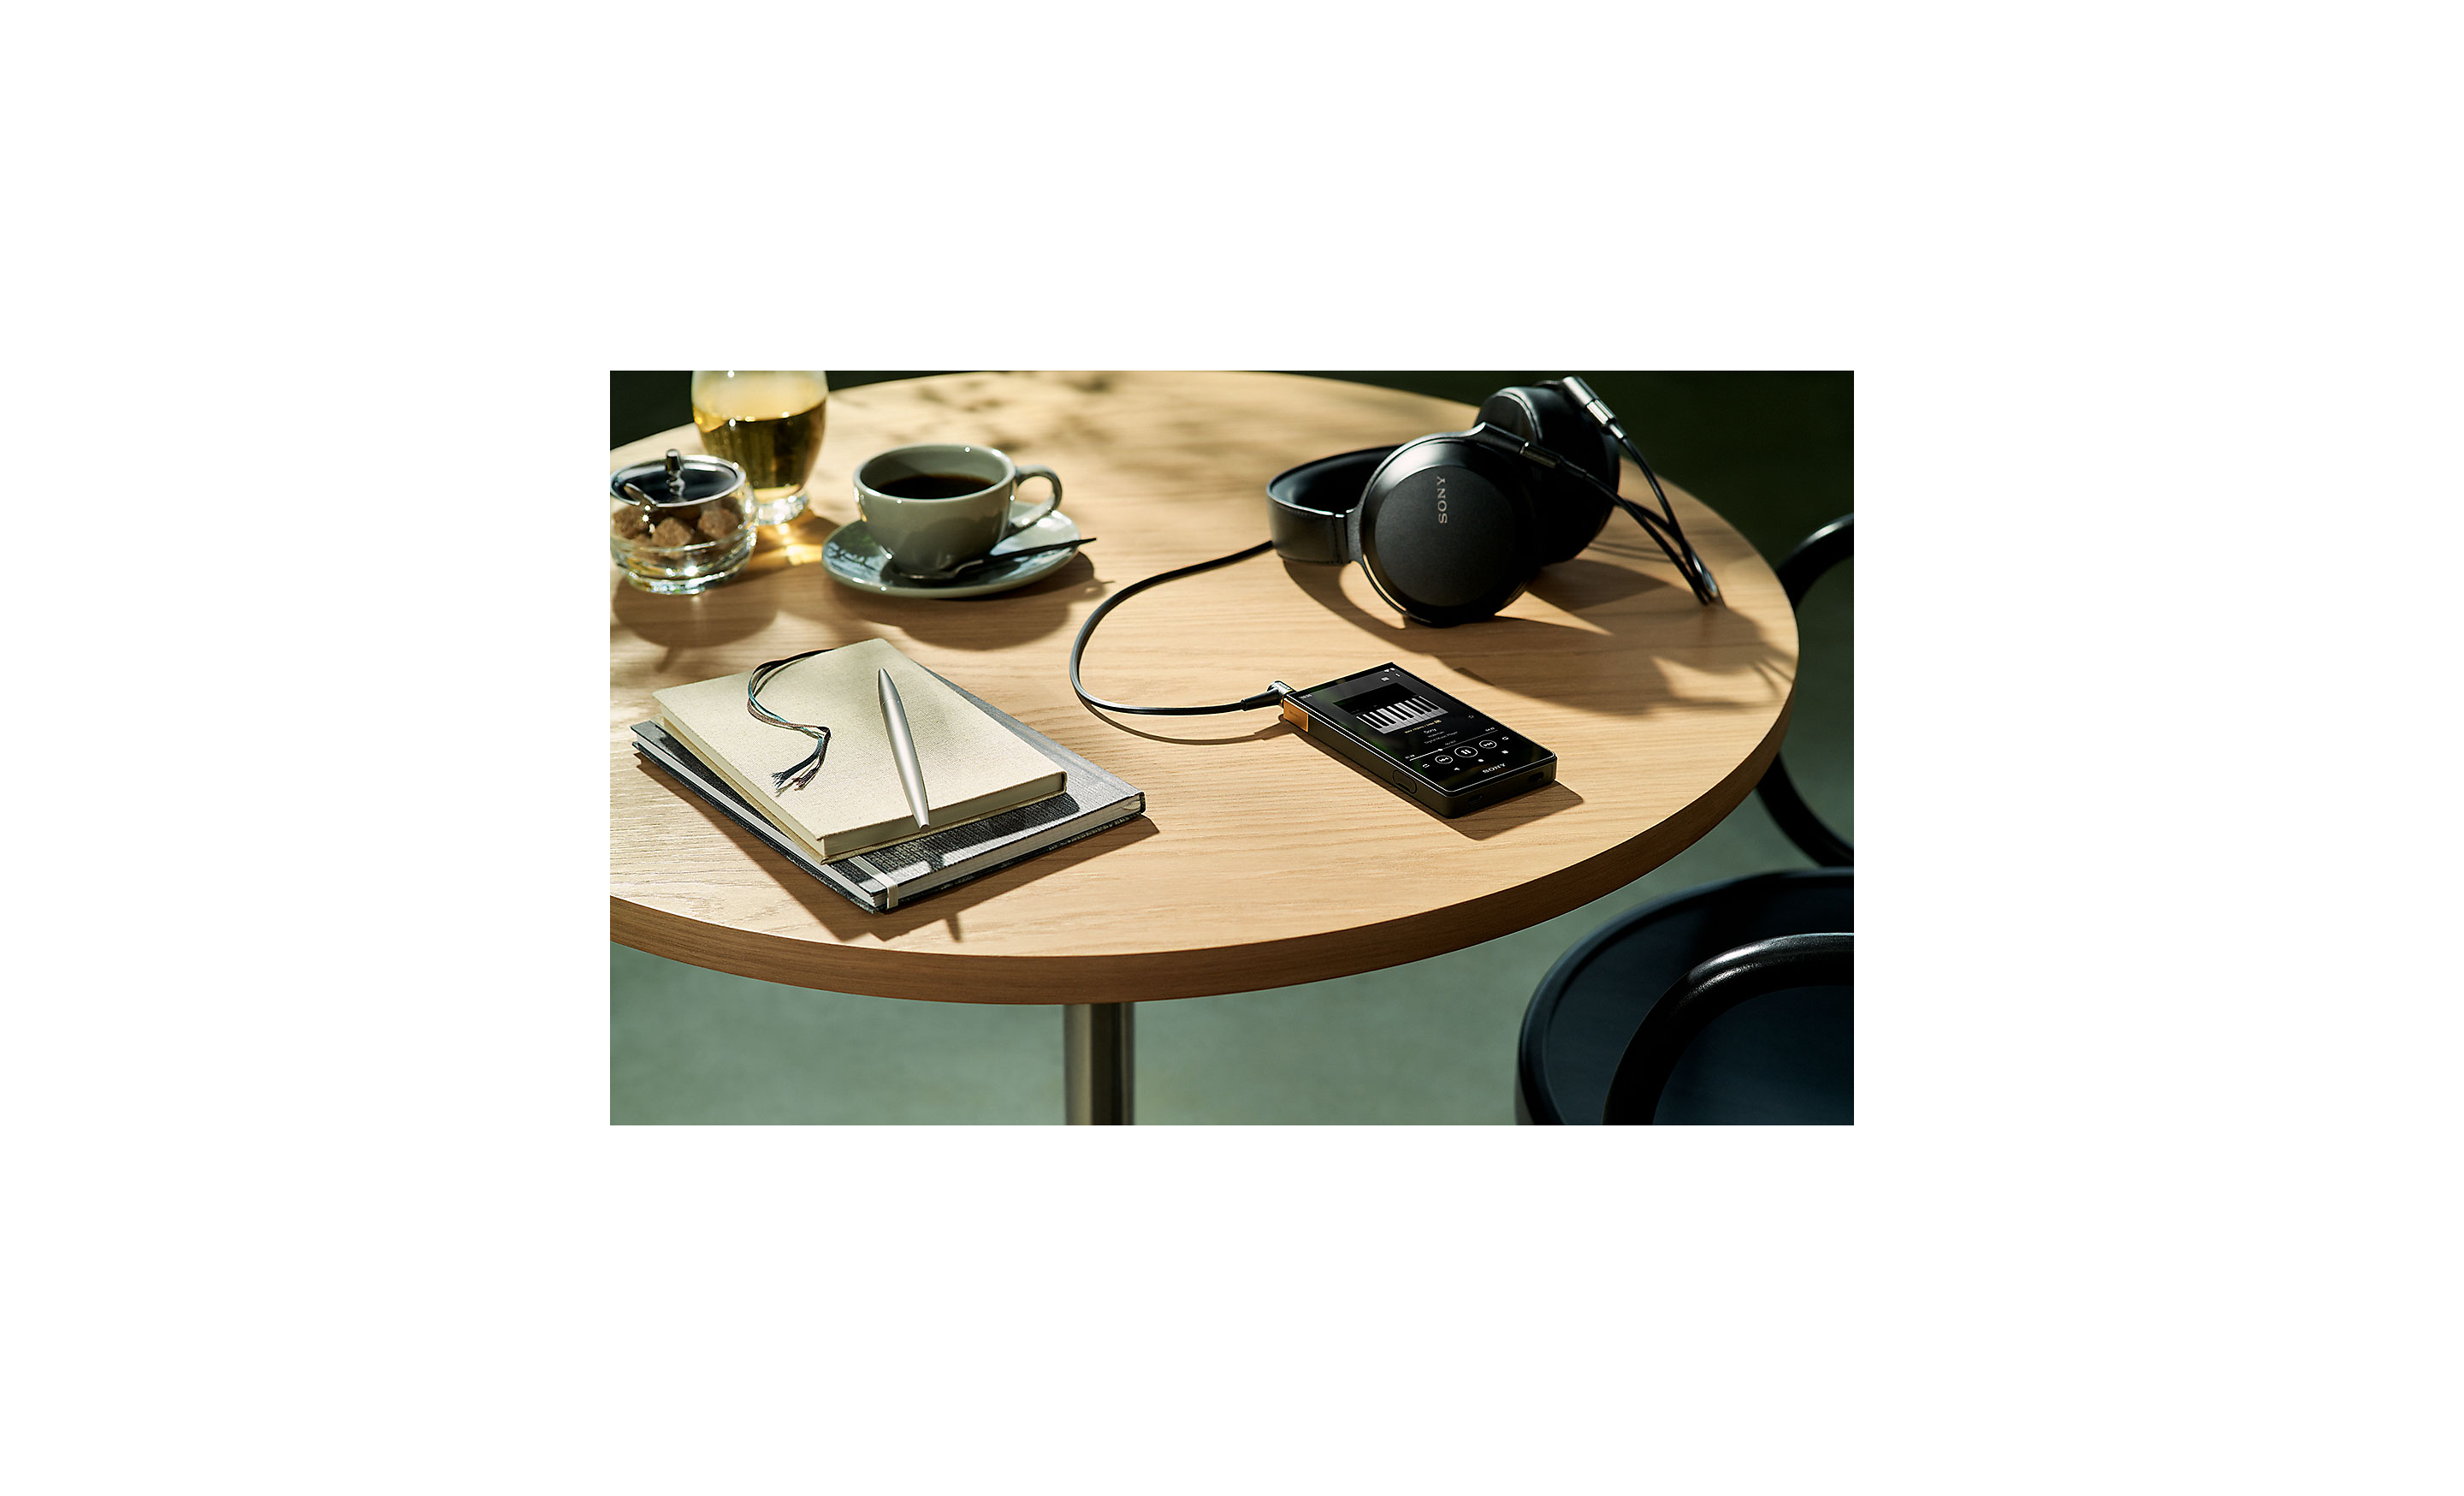 Hình ảnh NW-ZX707 nằm trên bàn cùng với tai nghe của Sony.